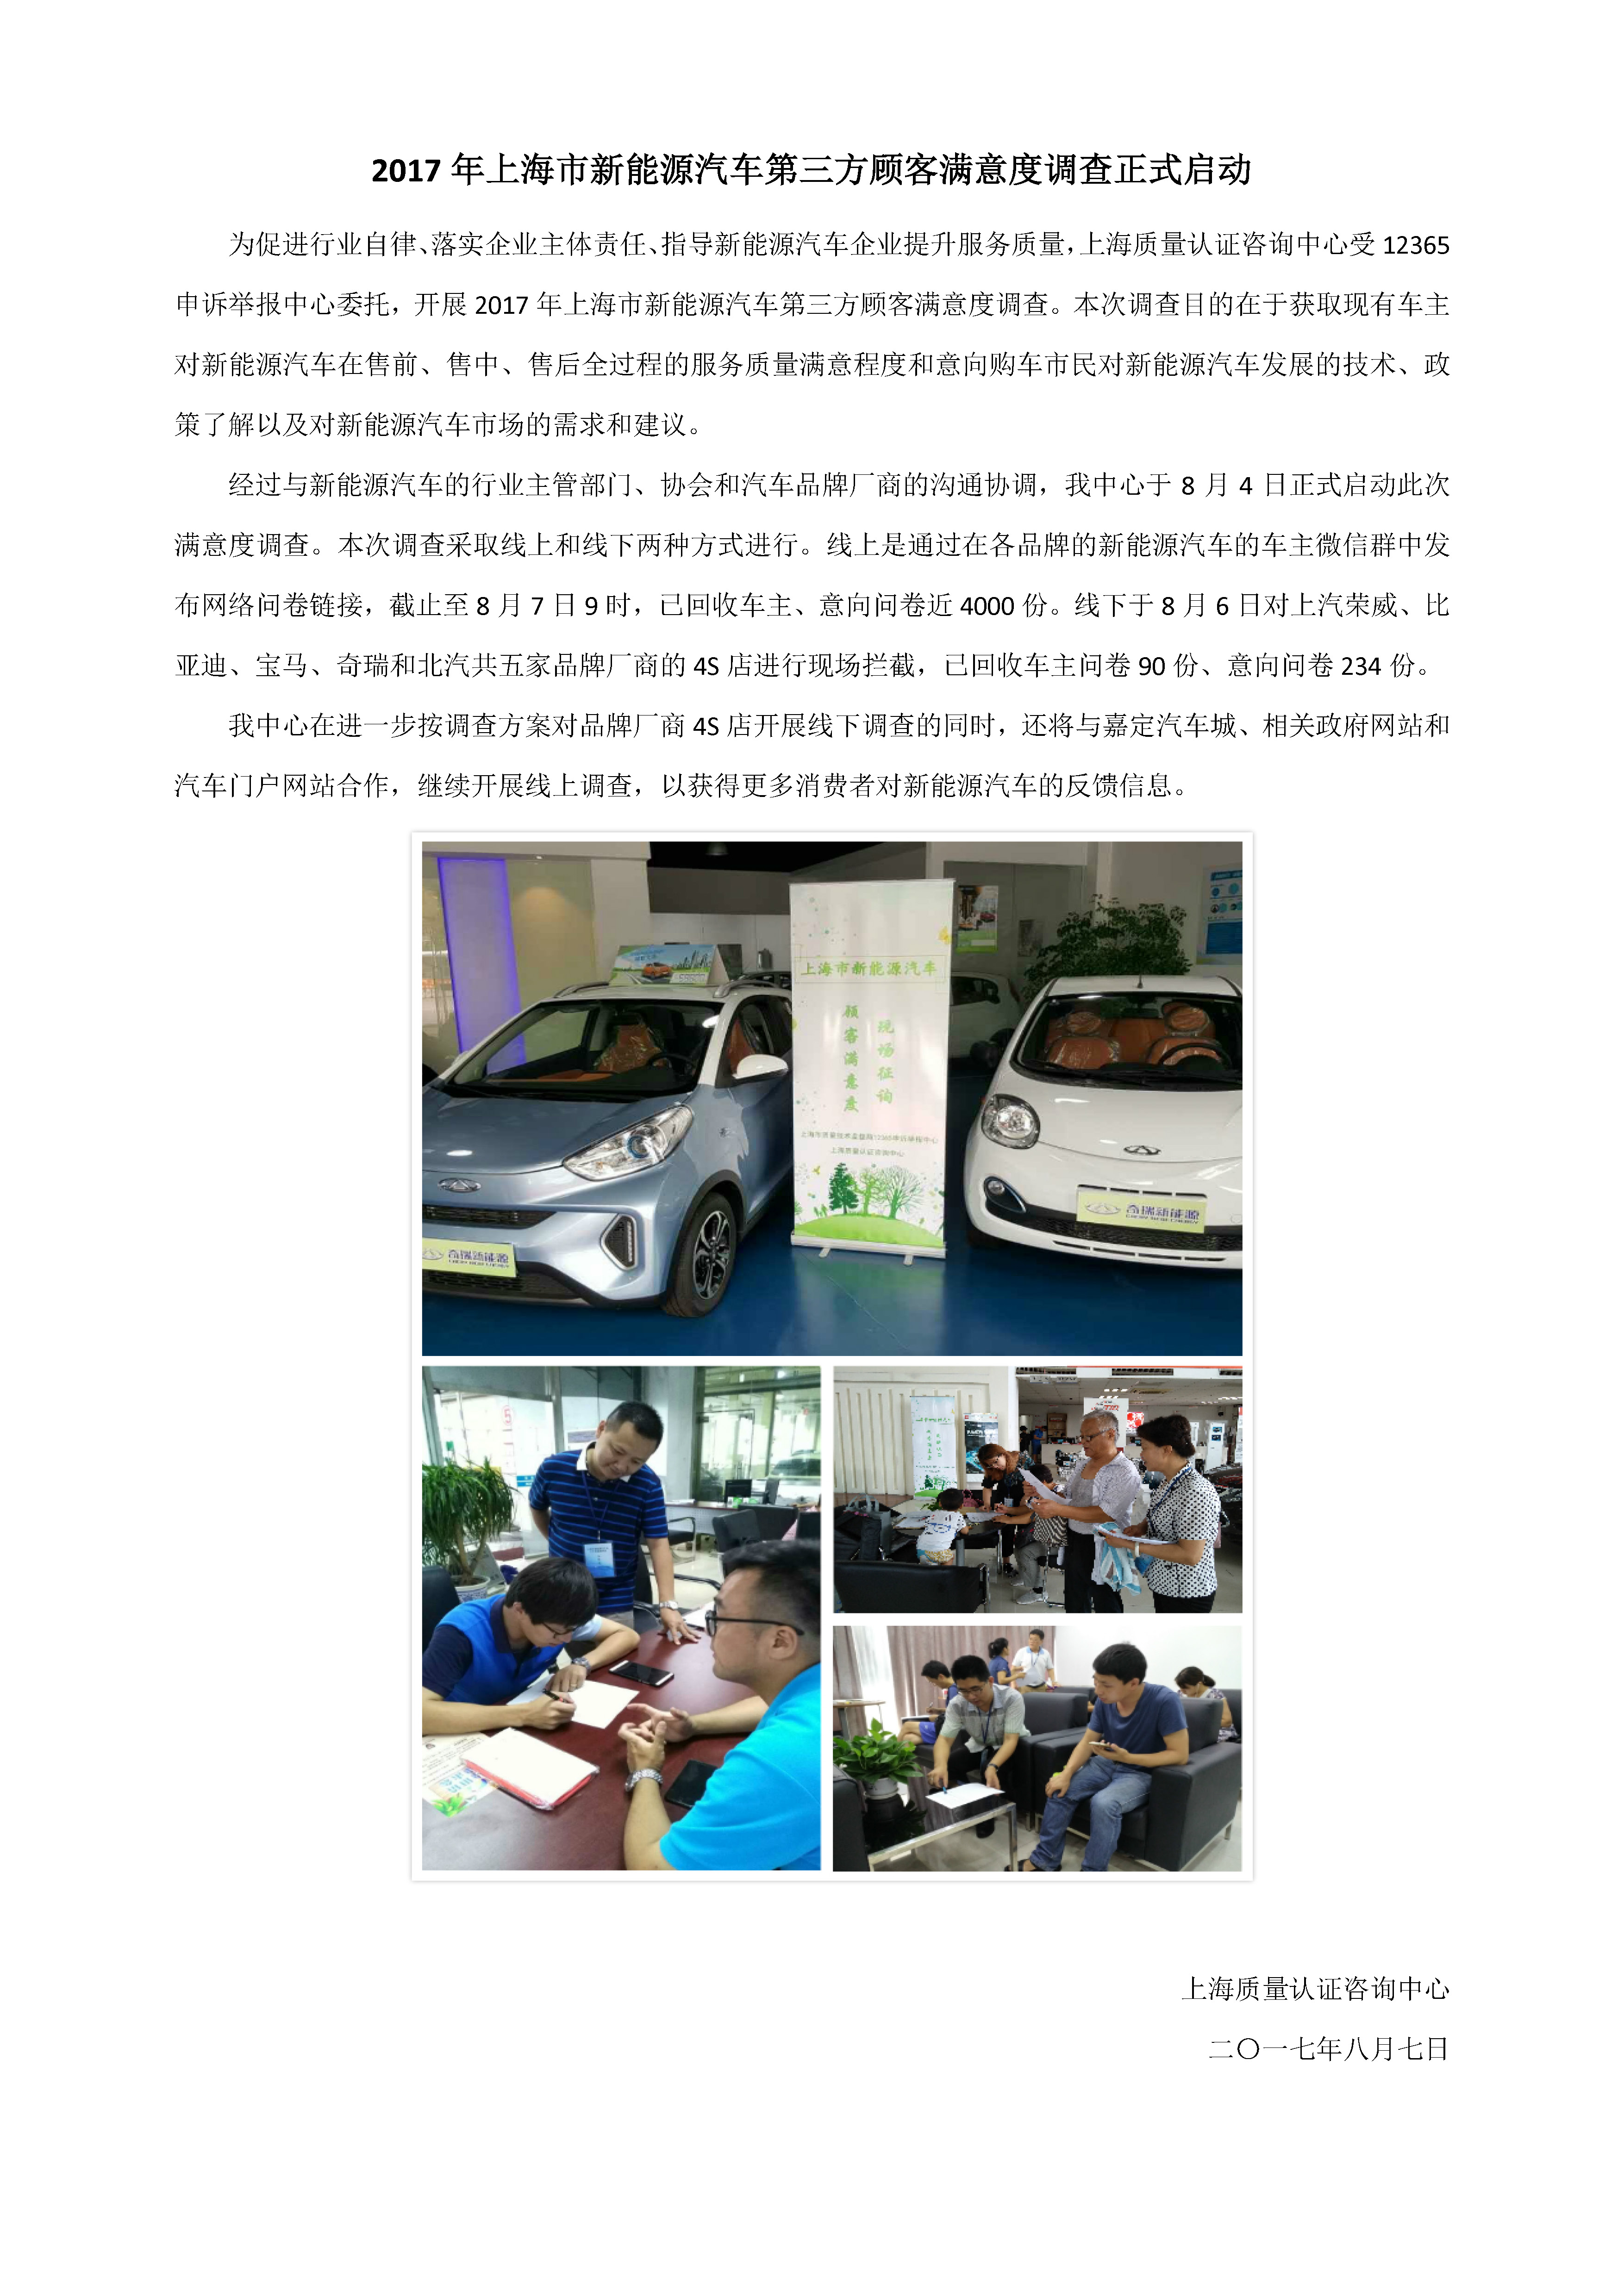 2017年上海市新能源汽车第三方顾客满意度调查正式启动.jpg